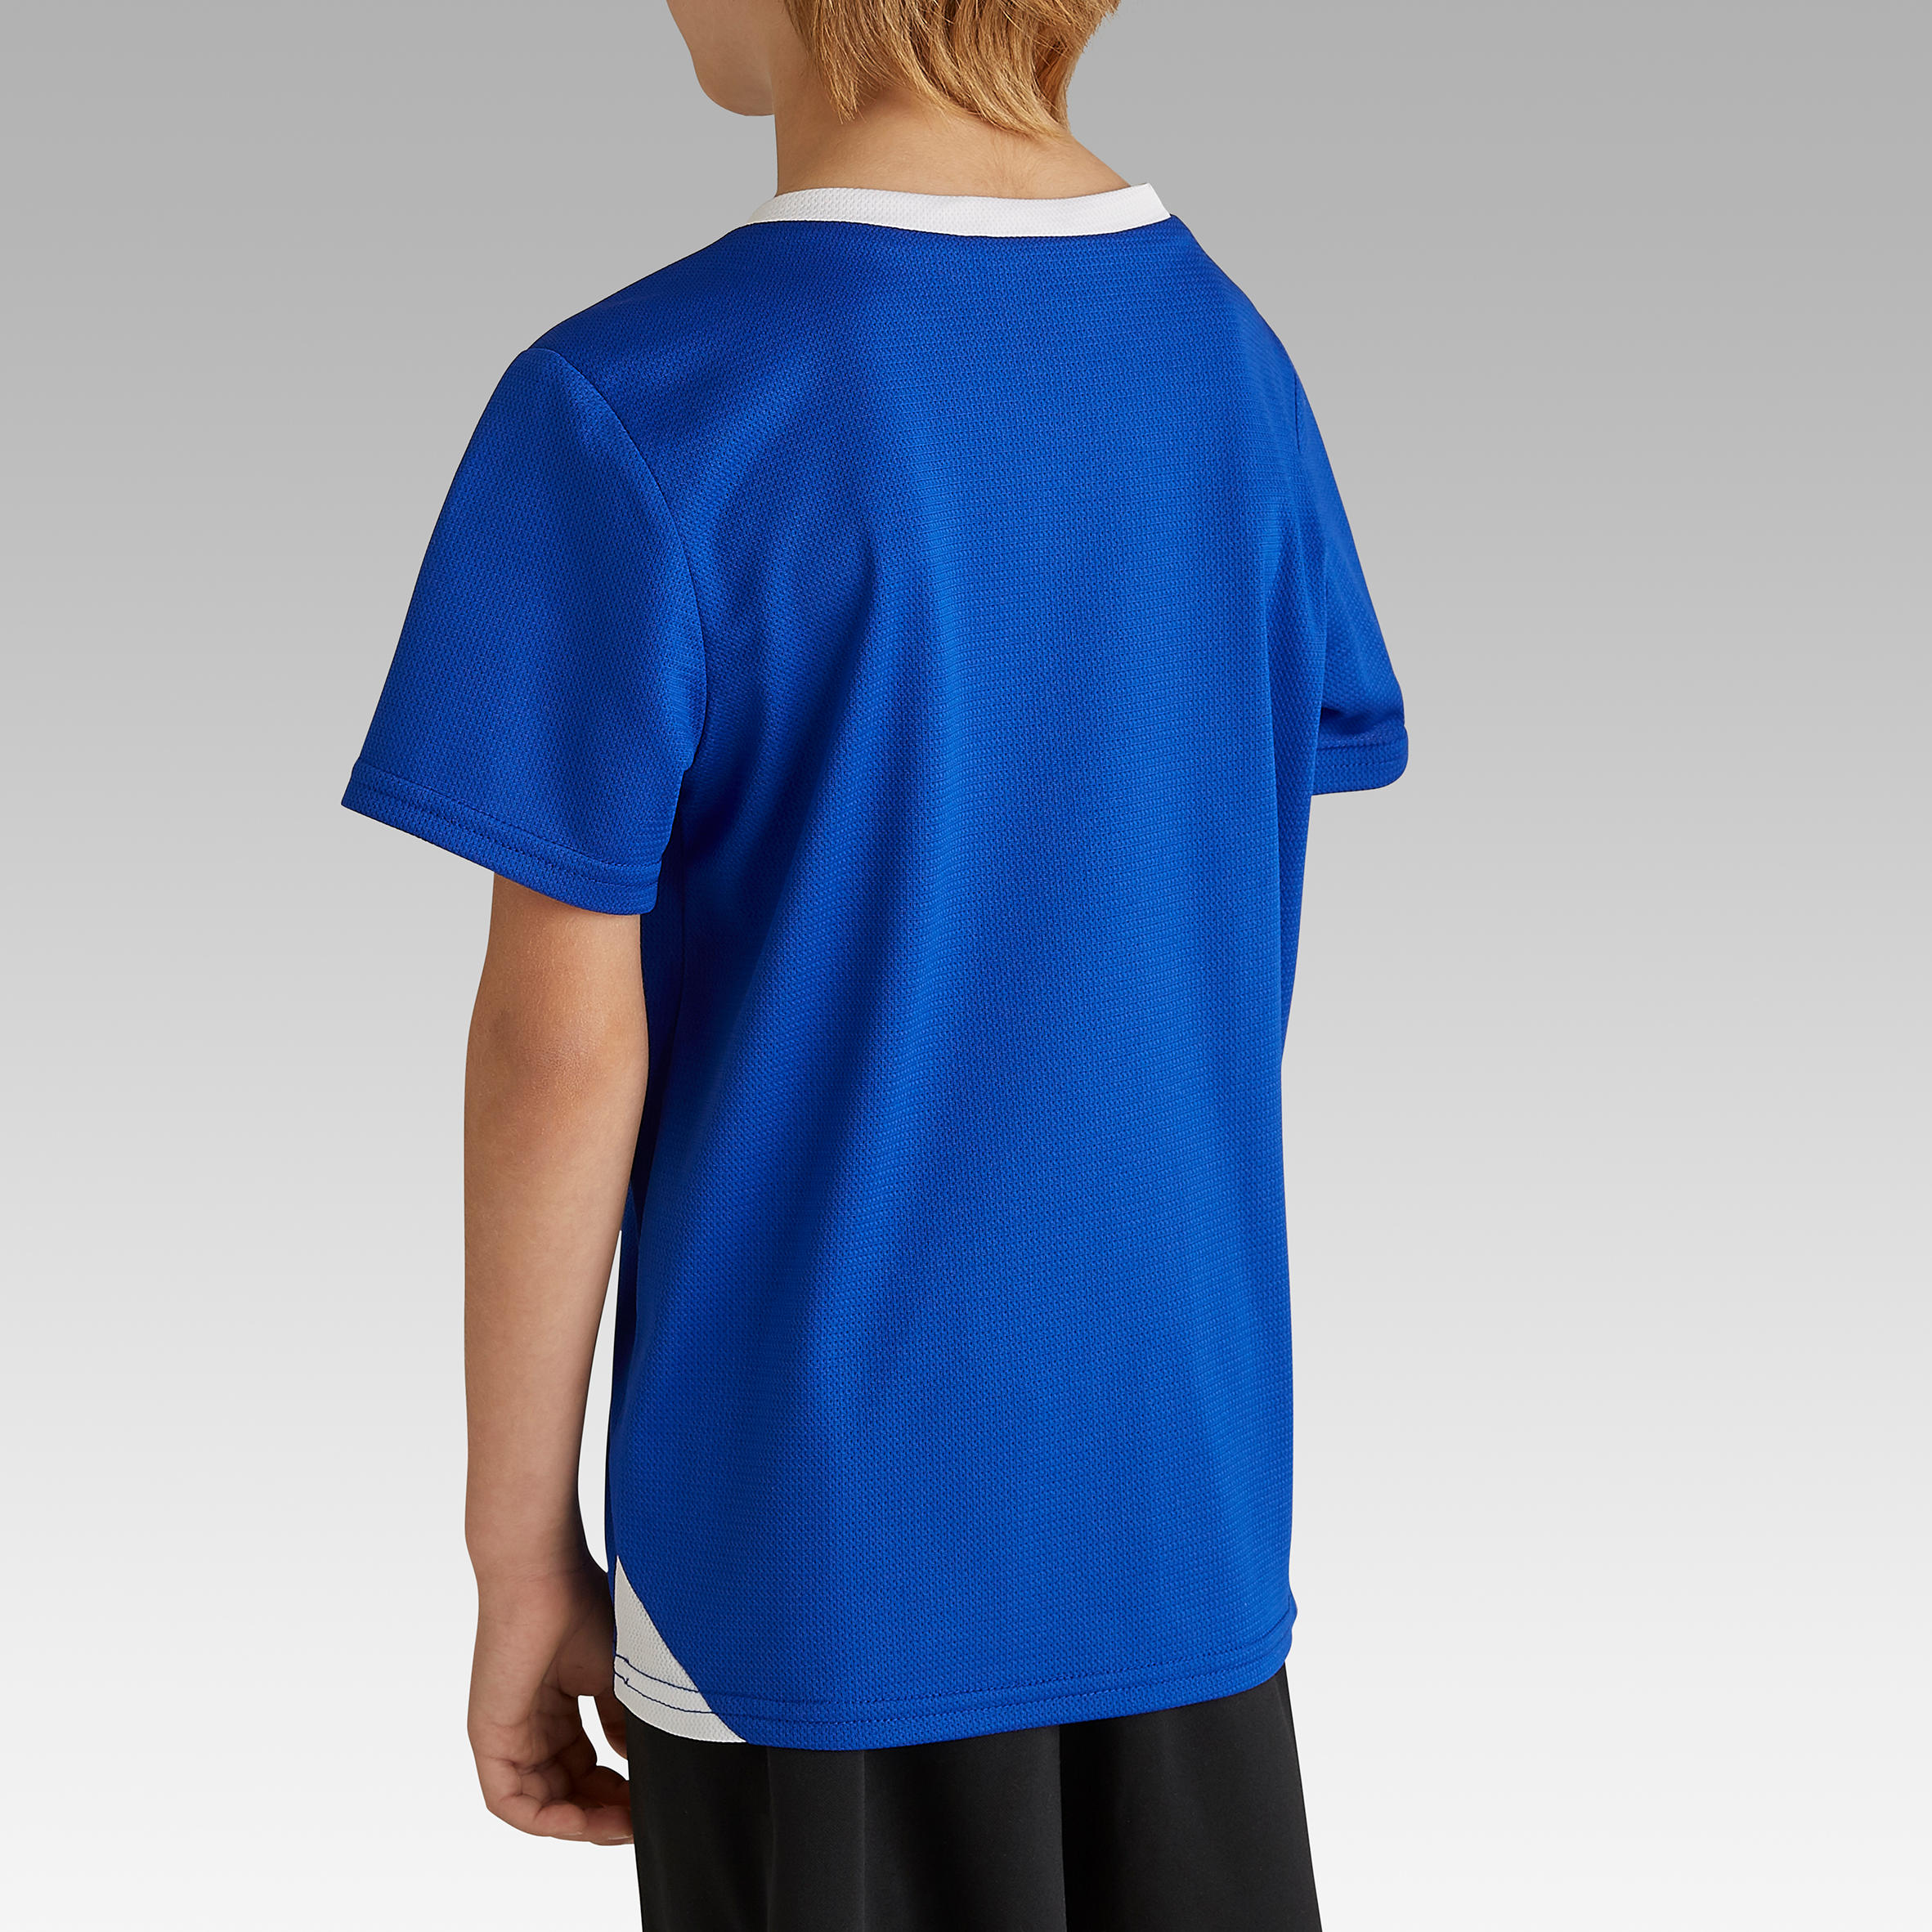 Kids' Football Shirt Essential - Blue 5/8